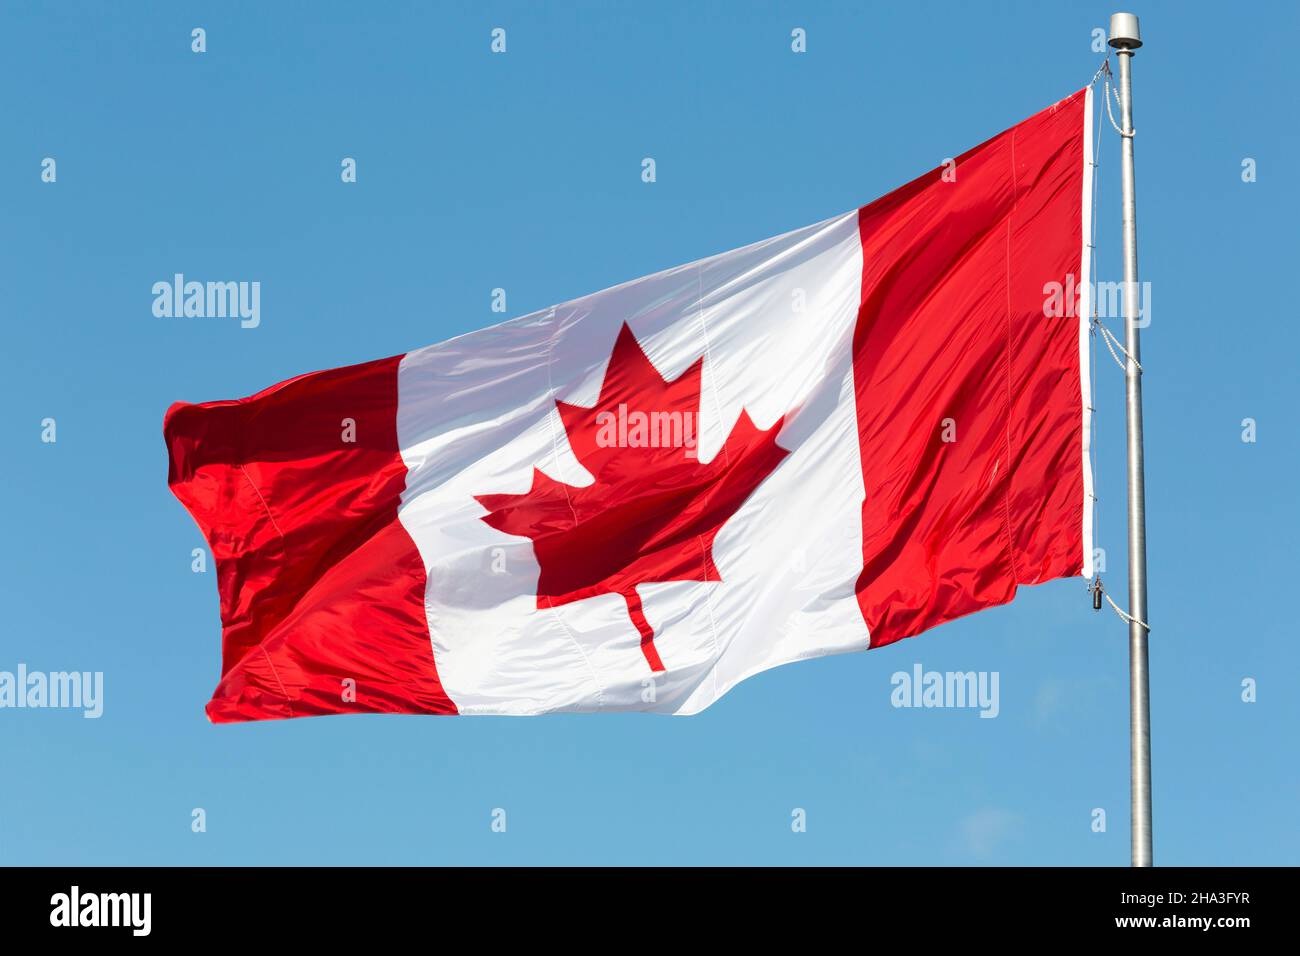 Die kanadische Flagge fliegt von einem Aluminium-Fahnenmast in Nova Scotia, Kanada. Die rot-weiße Flagge trägt ein Ahornleademblem. Stockfoto